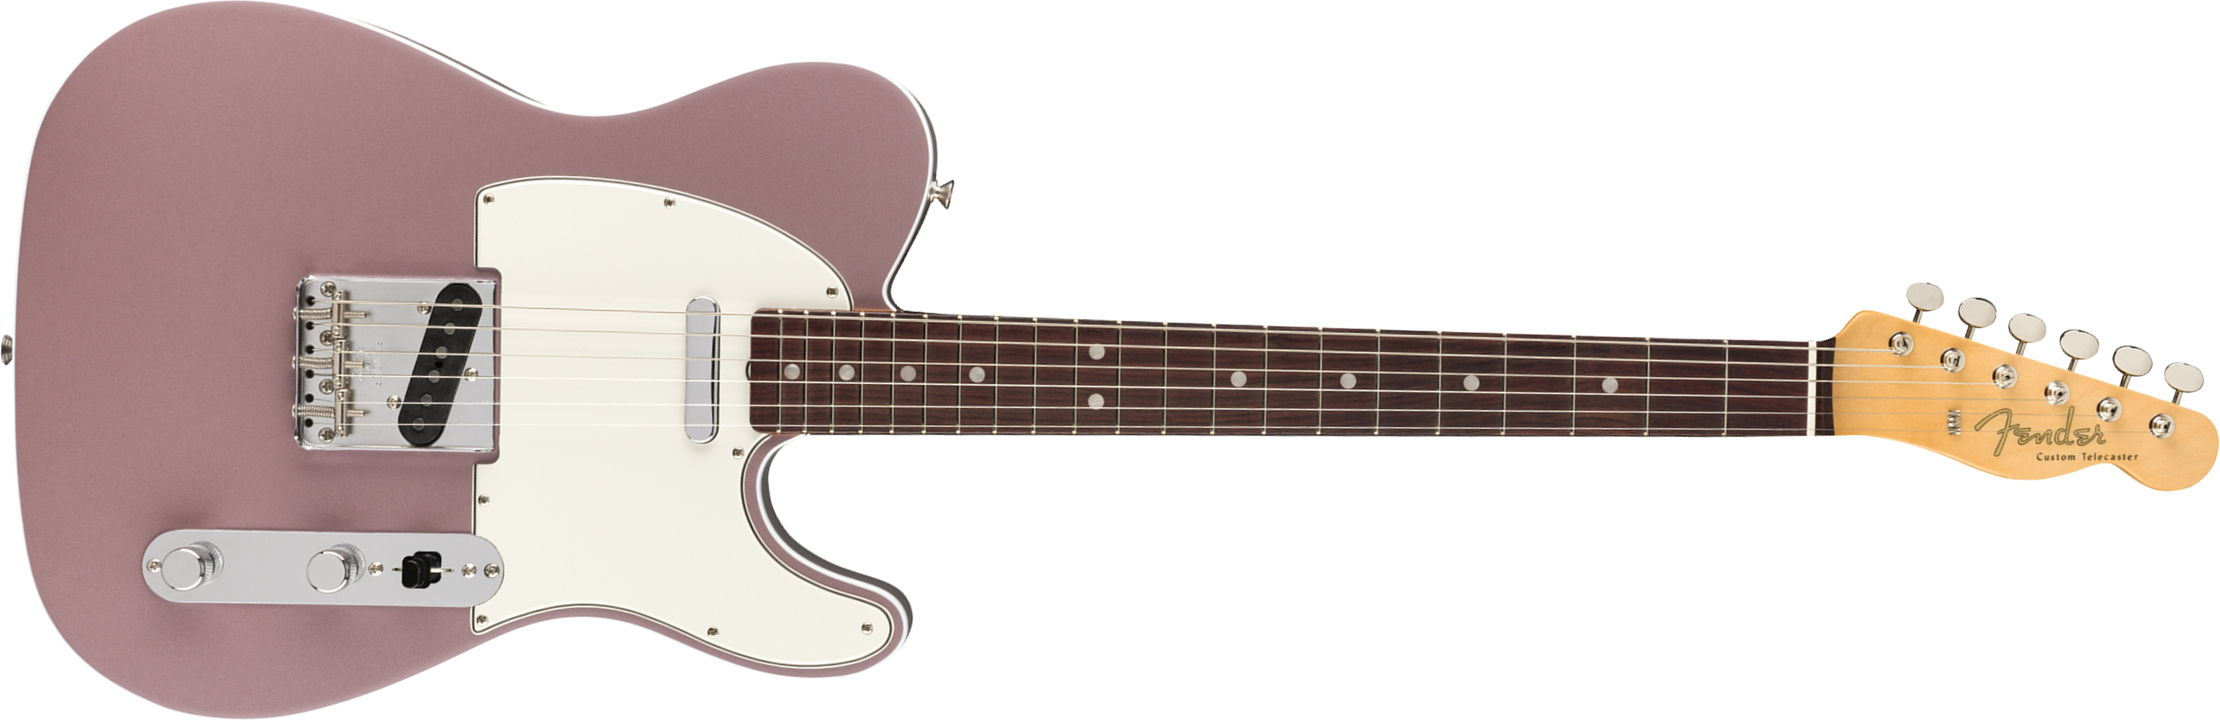 Fender Tele '60s American Original Usa Ss Rw - Burgundy Mist Metallic - Guitare Électrique Forme Tel - Main picture